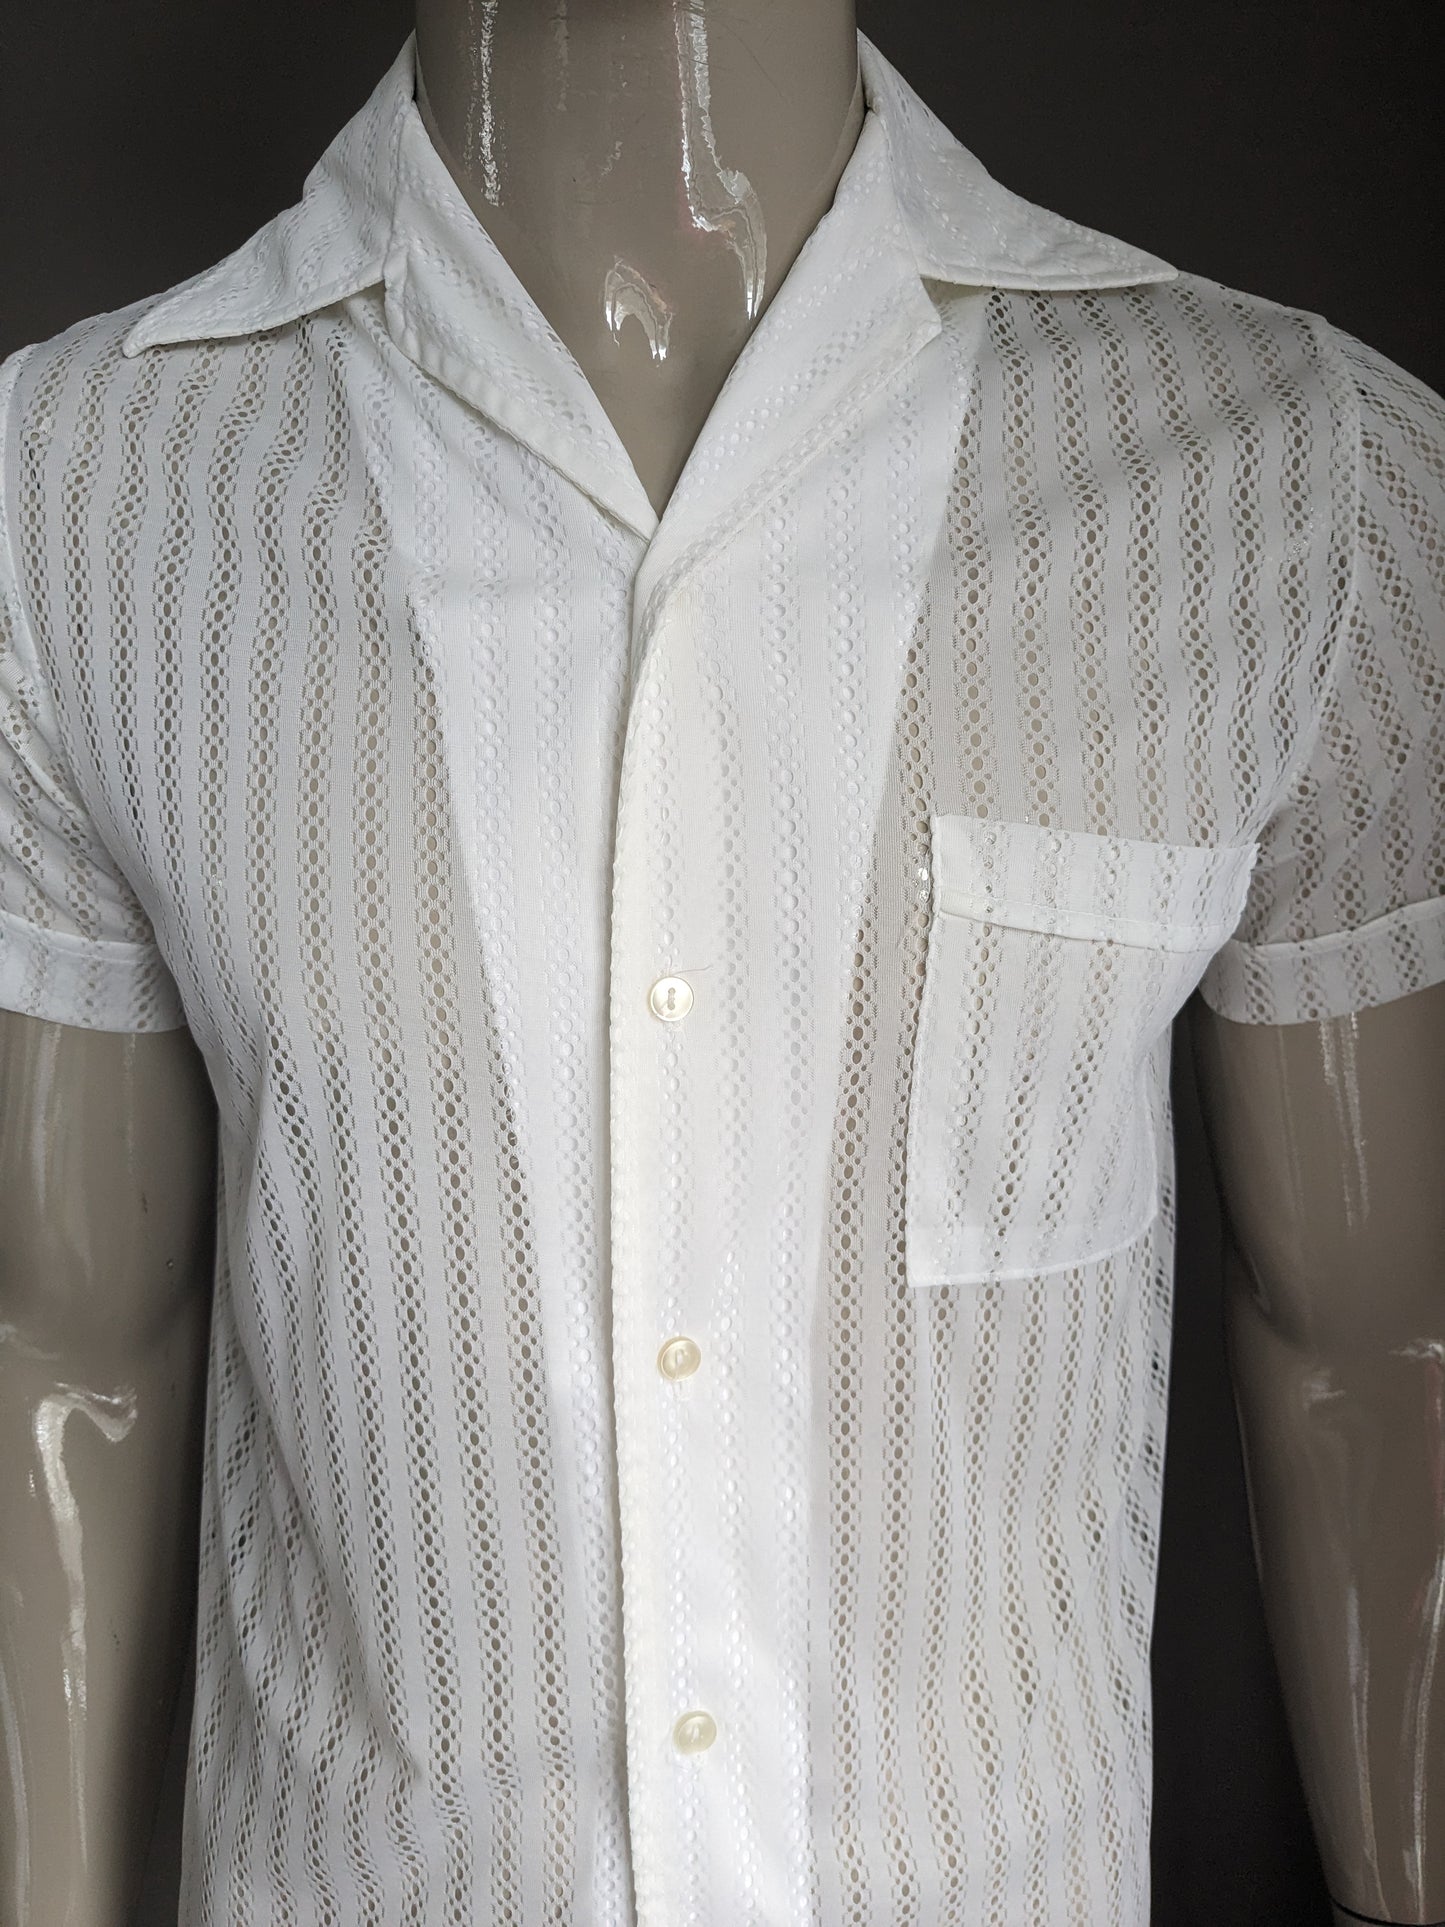 Vintage 70er Hemd Kurzarm. Weißes transparentes /durchscheinendes Motiv. Größe M.